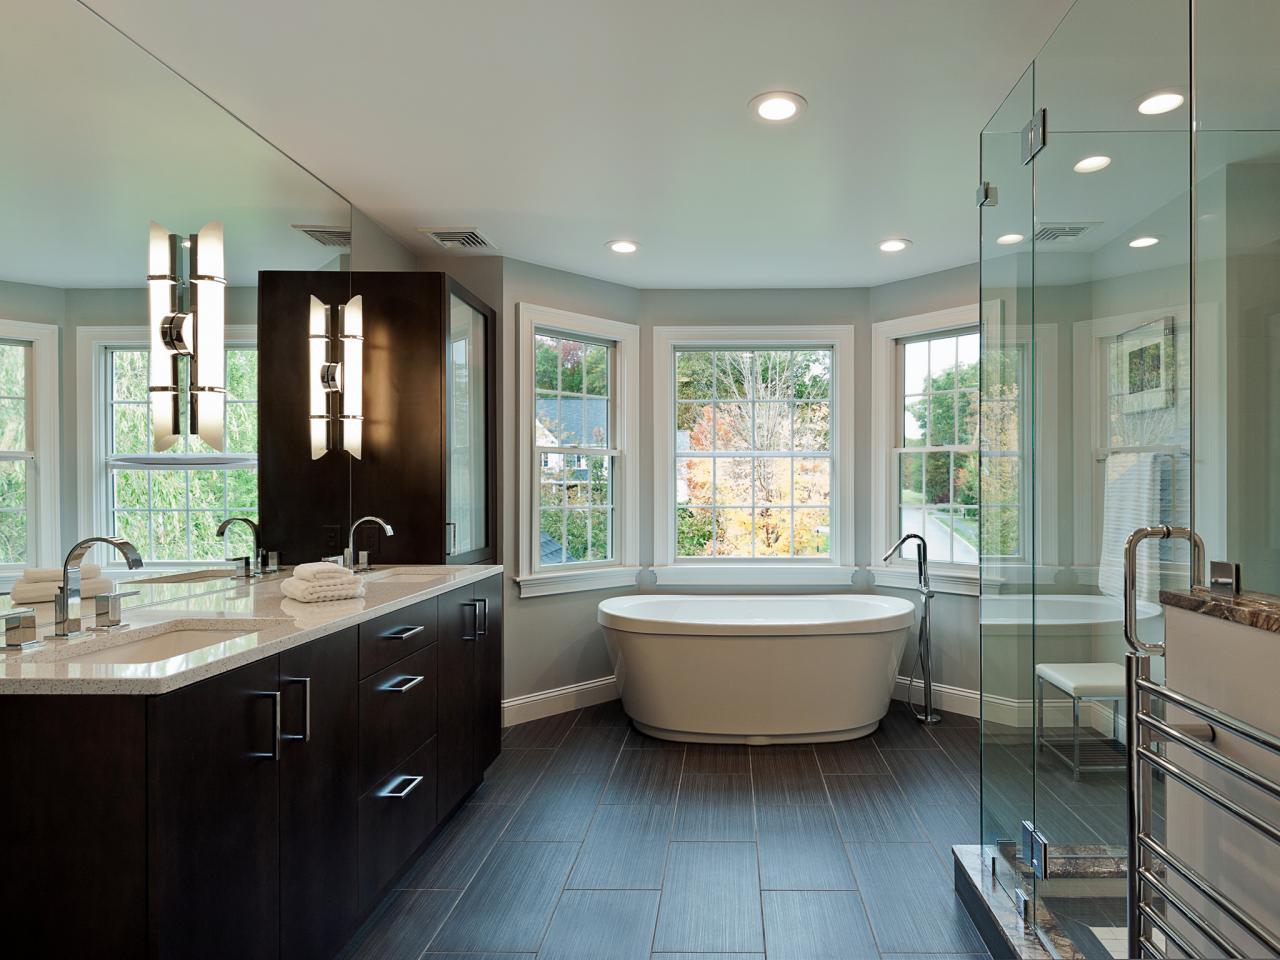 salle-de-bain-grande-spacieuse-original-magued-barsoum-meuble-bois-nature-luxe